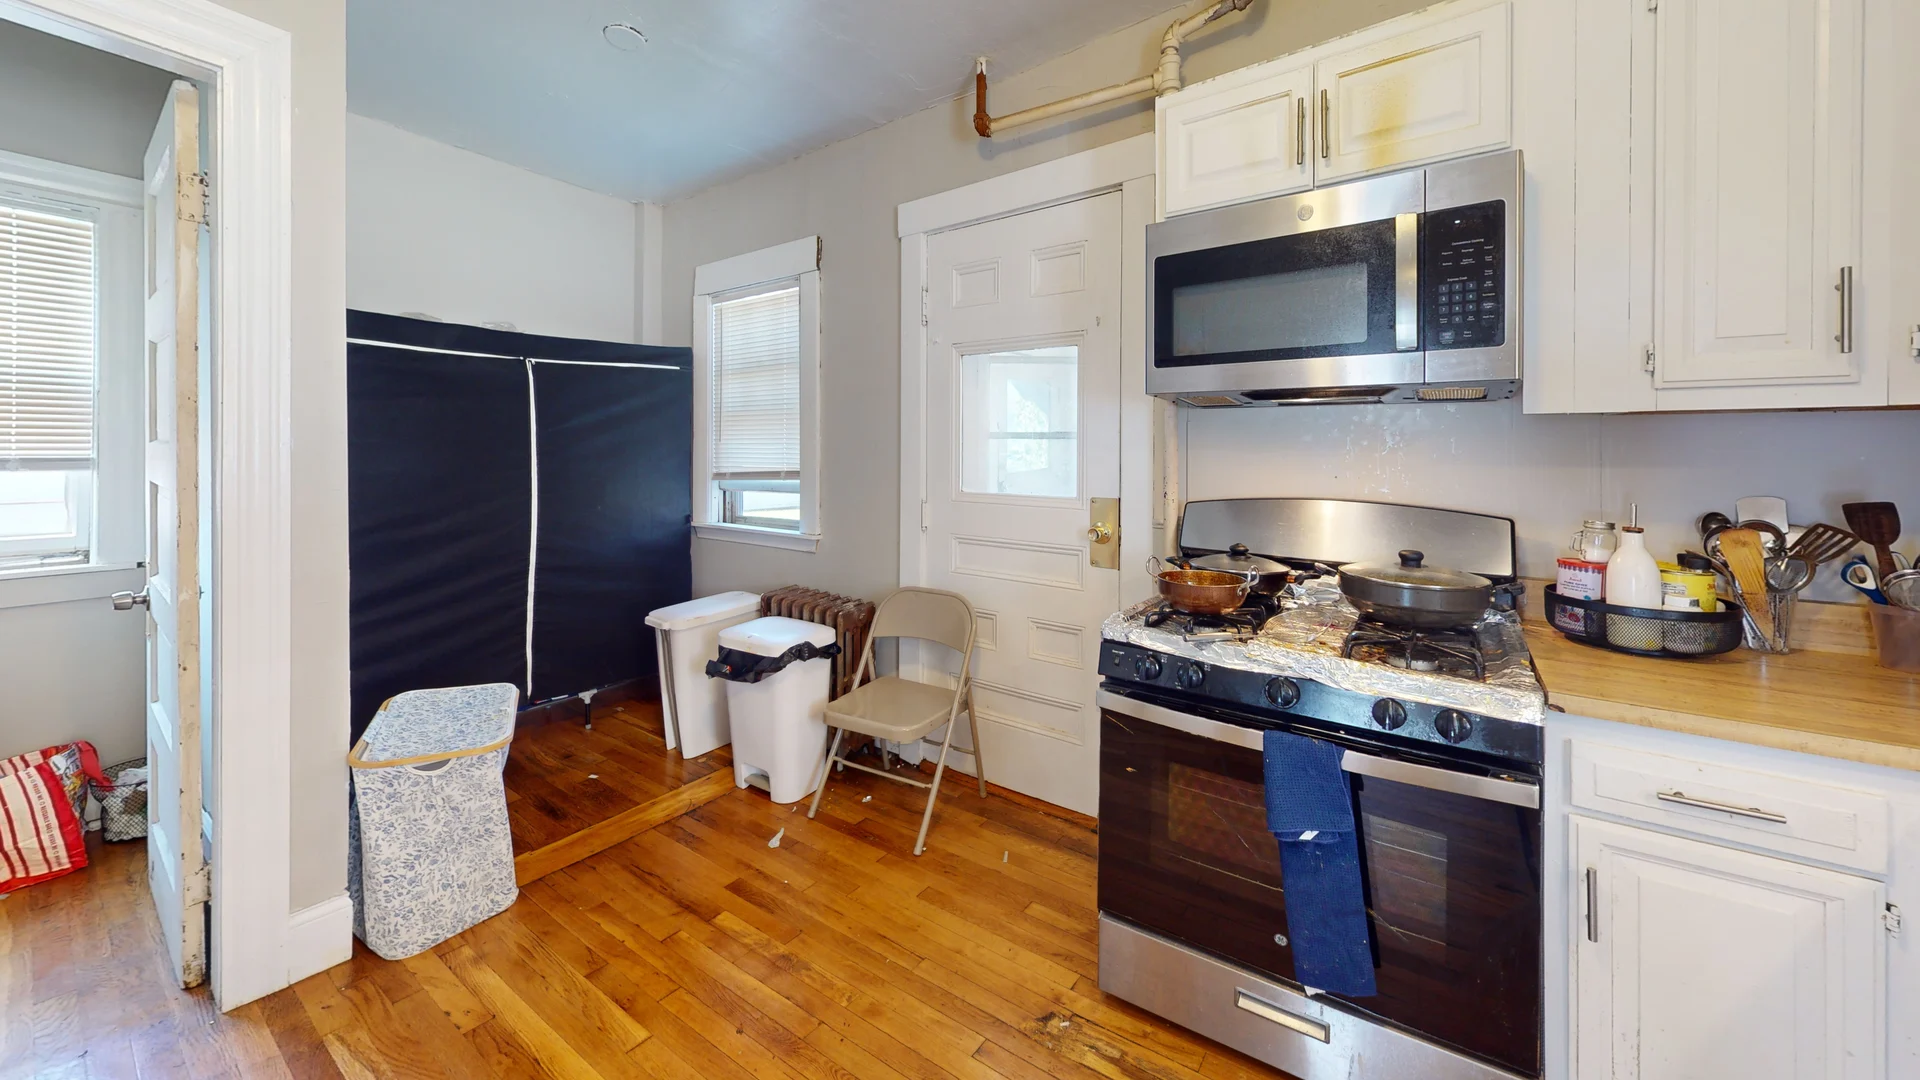 Photos of apartment on Dighton,Boston MA 02135